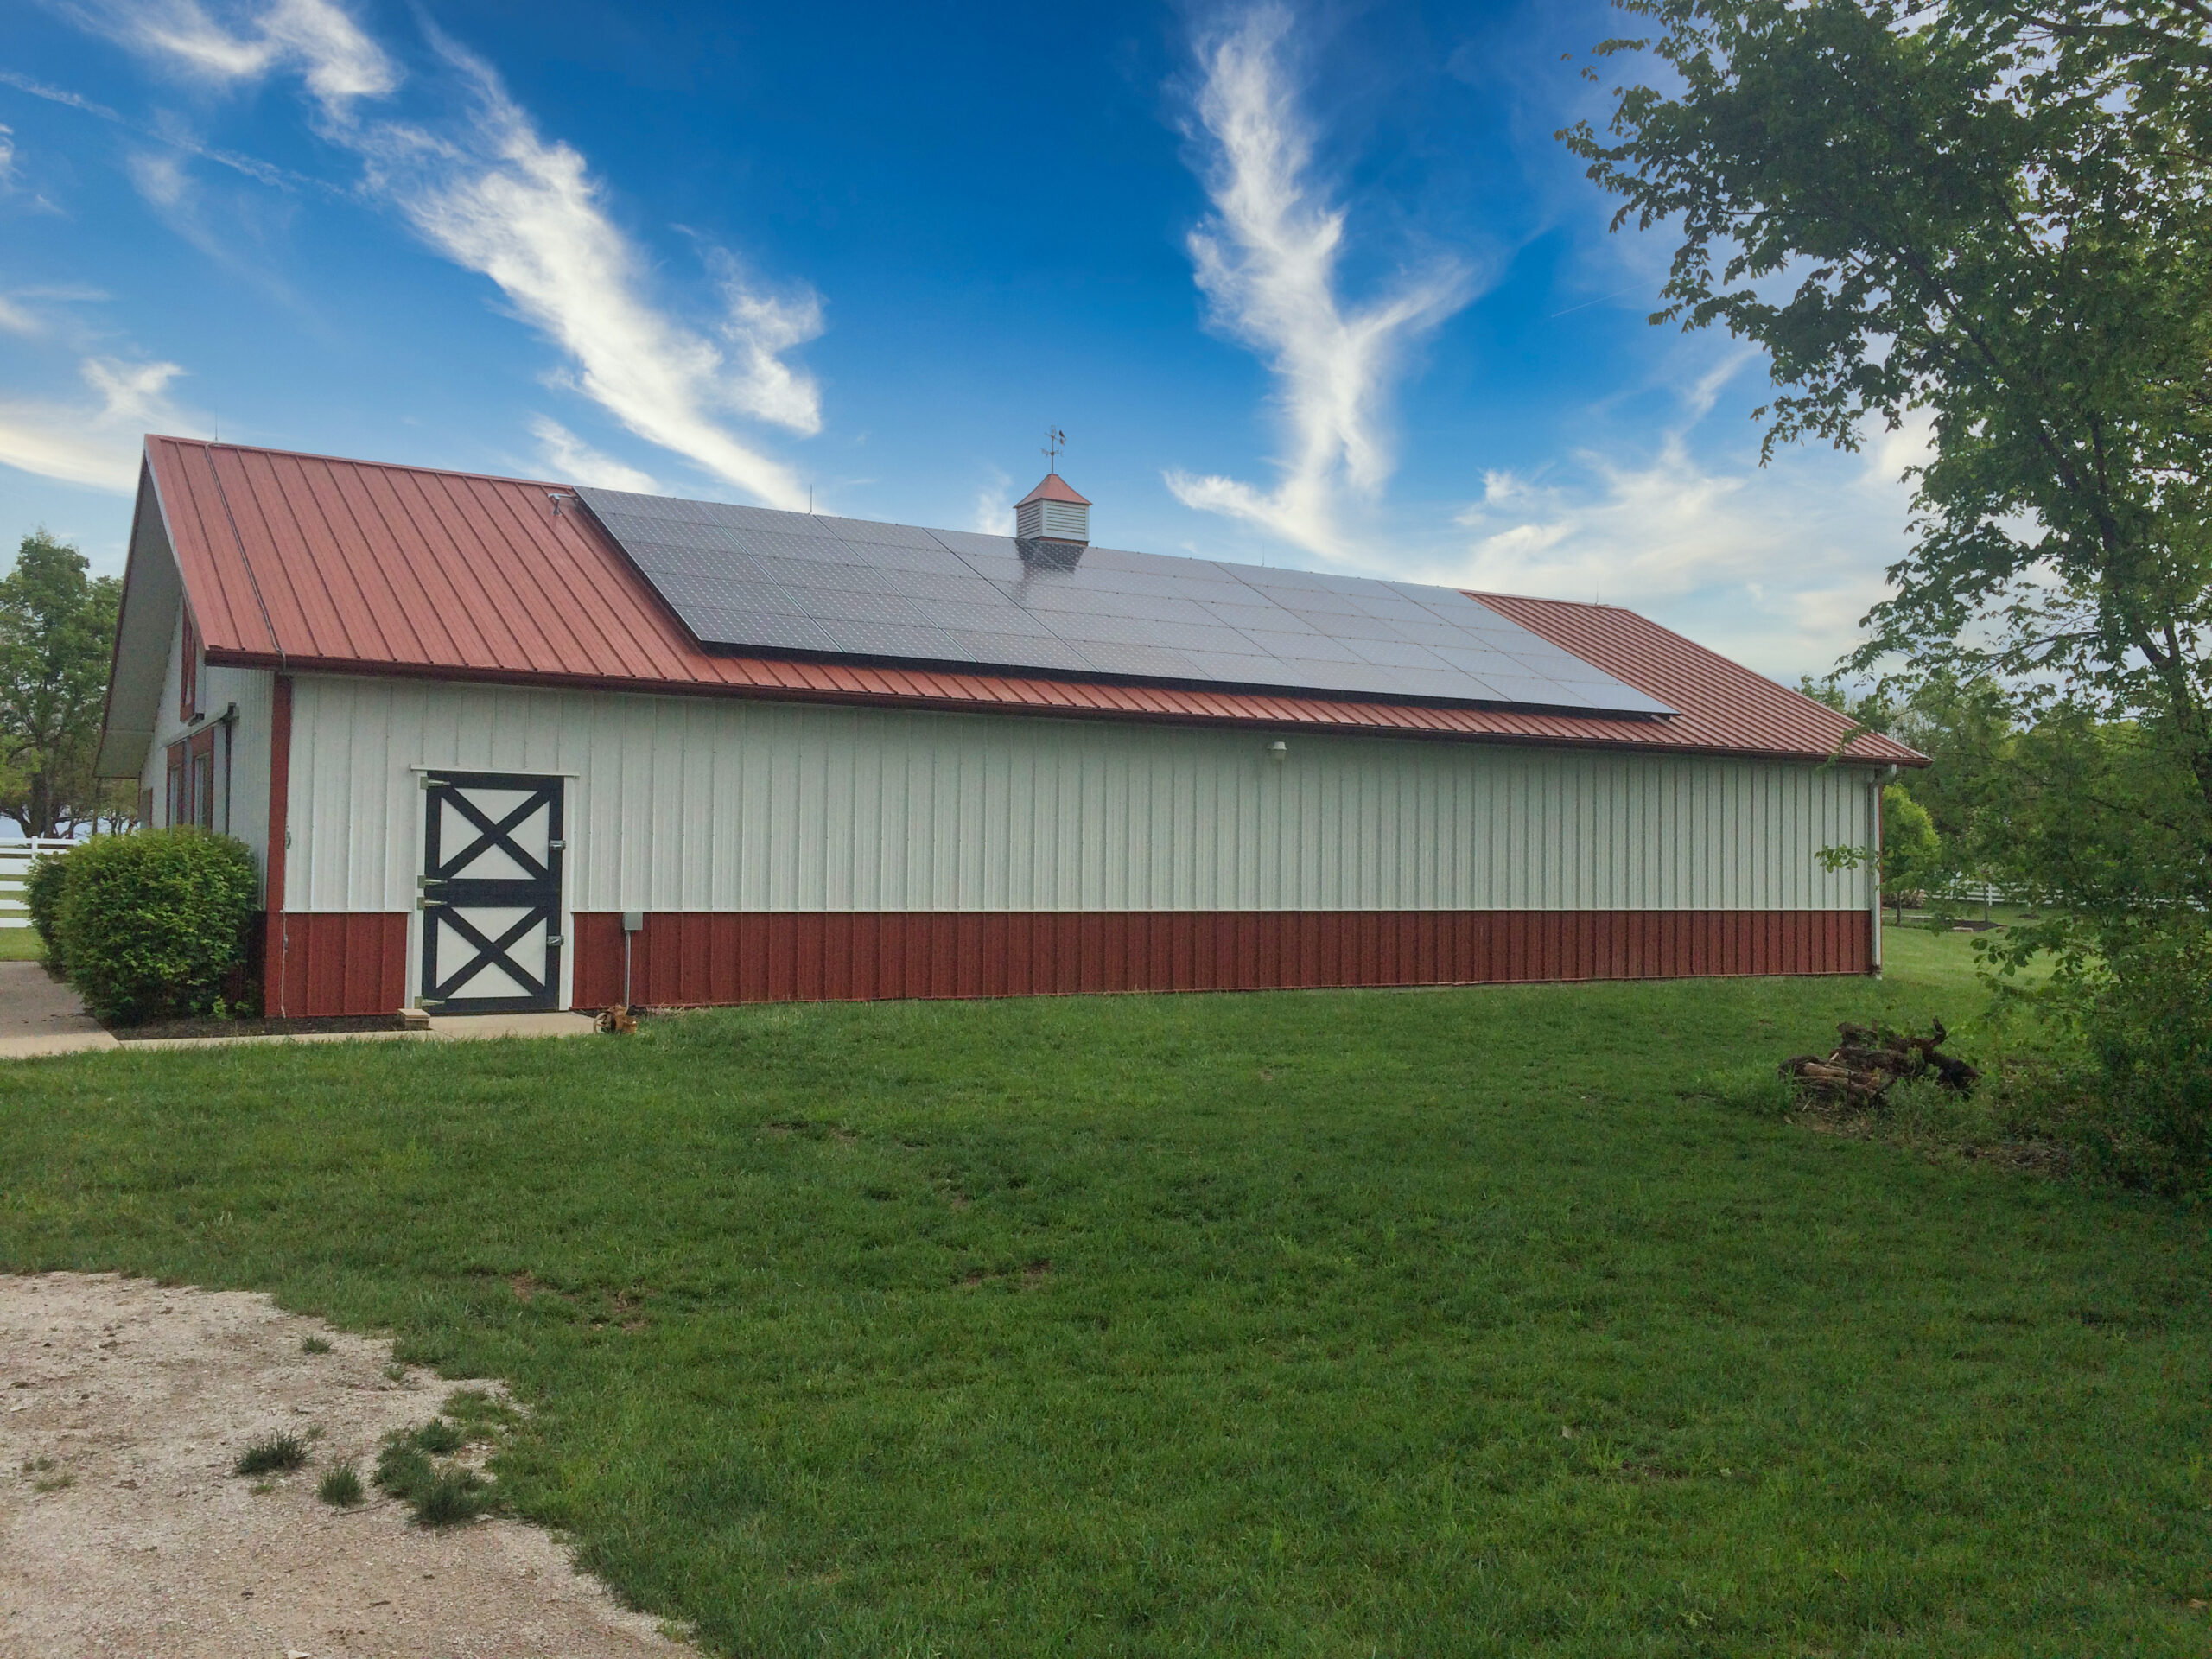 Kansas Barn Roof Solar